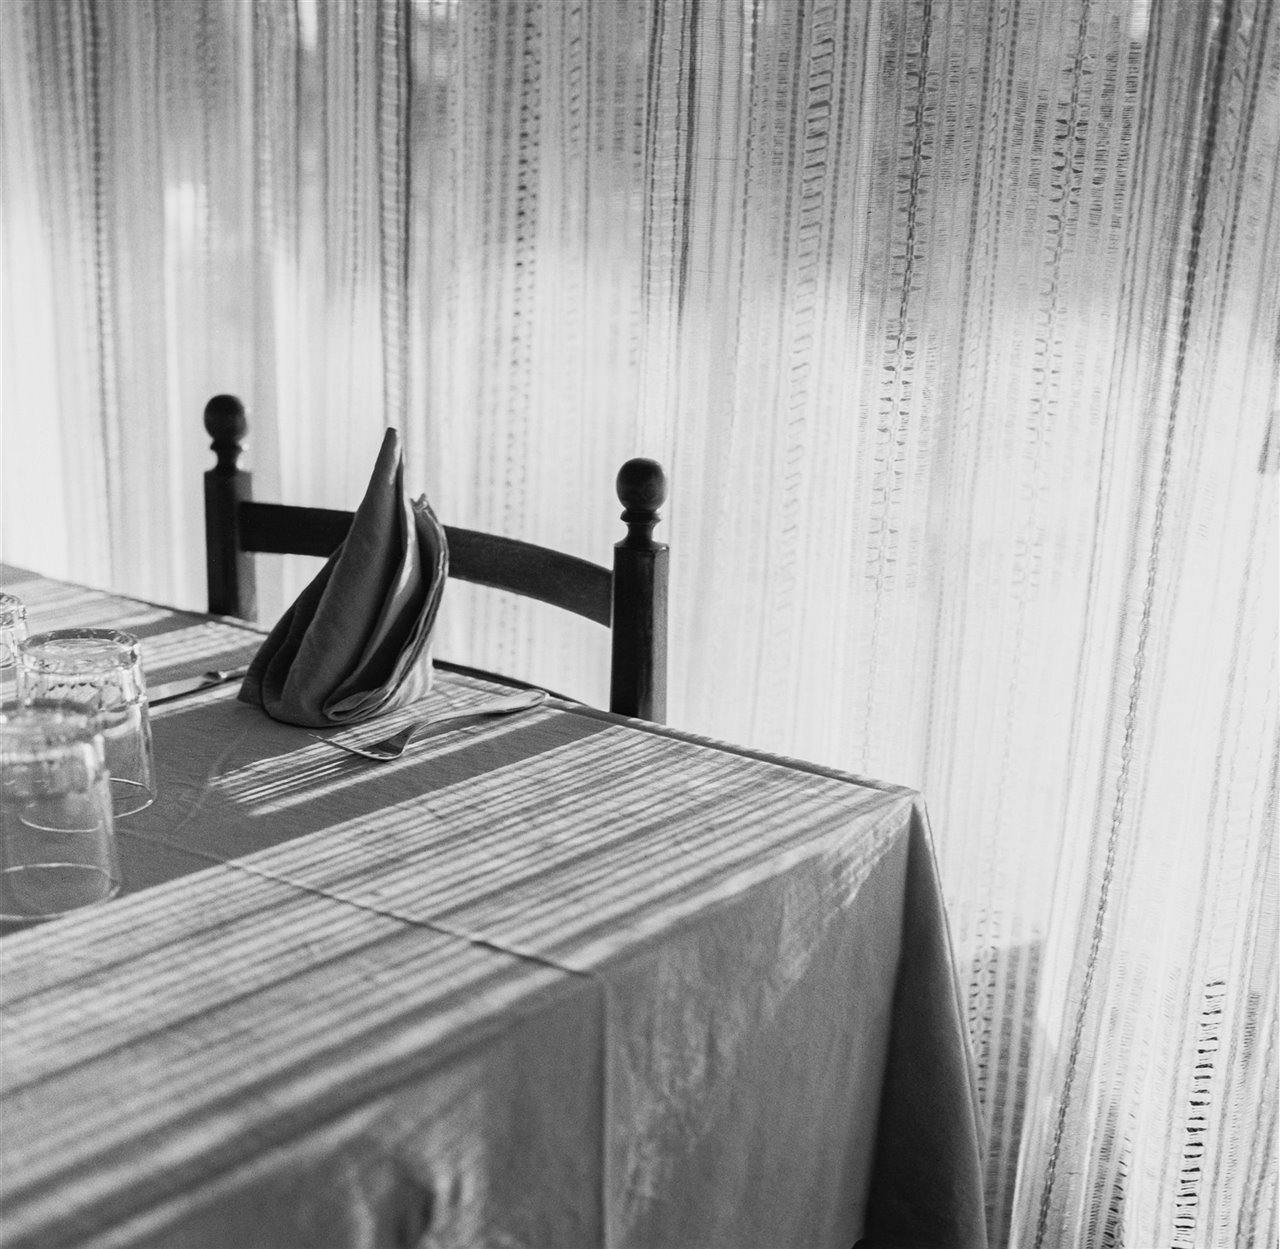 Las mesas de restaurantes, un motivo que ya había fotografiado en Italia y Francia, se convierten tras su paso por Marruecos en el referente de un creador con un lenguaje visual propio e intransferible. © Arxiu Ferran Freixa, VEGAP, Girona, 2022.